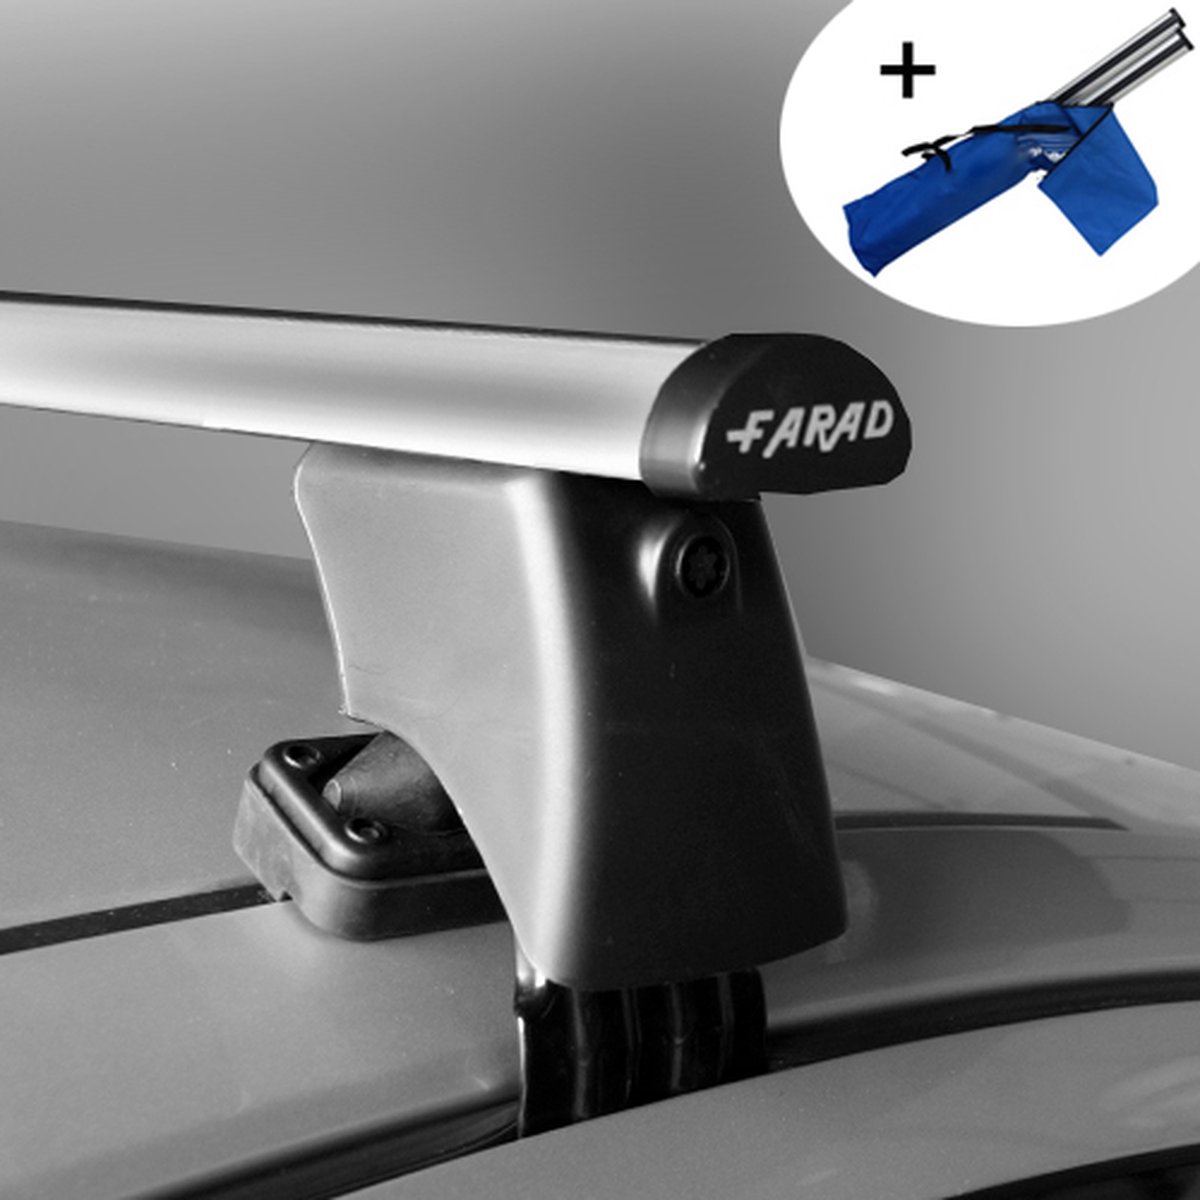 Dakdragers geschikt voor Kia Rio 5 deurs hatchback 2011 t/m 2017 - Aluminium - inclusief dakdrager opbergtas